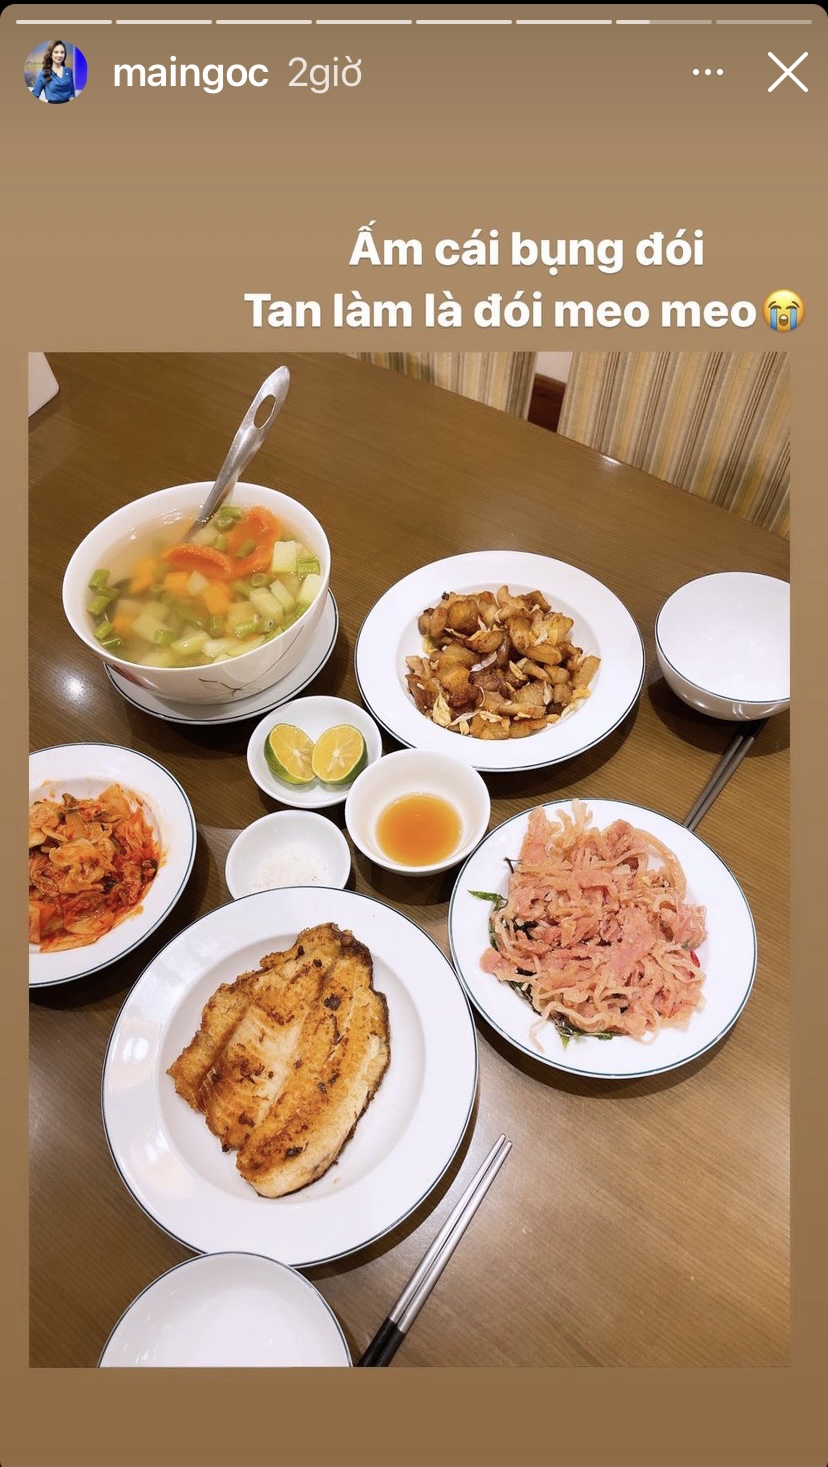 Vừa tan làm mà được ngồi vào mâm cơm thịnh soạn như Mai Ngọc thì còn gì bằng. Mâm cơm nhà cô MC hôm nay có canh khoai tây-cà rốt, thịt rang, nem nắm, cá rán và một đĩa kim chi Hàn Quốc.